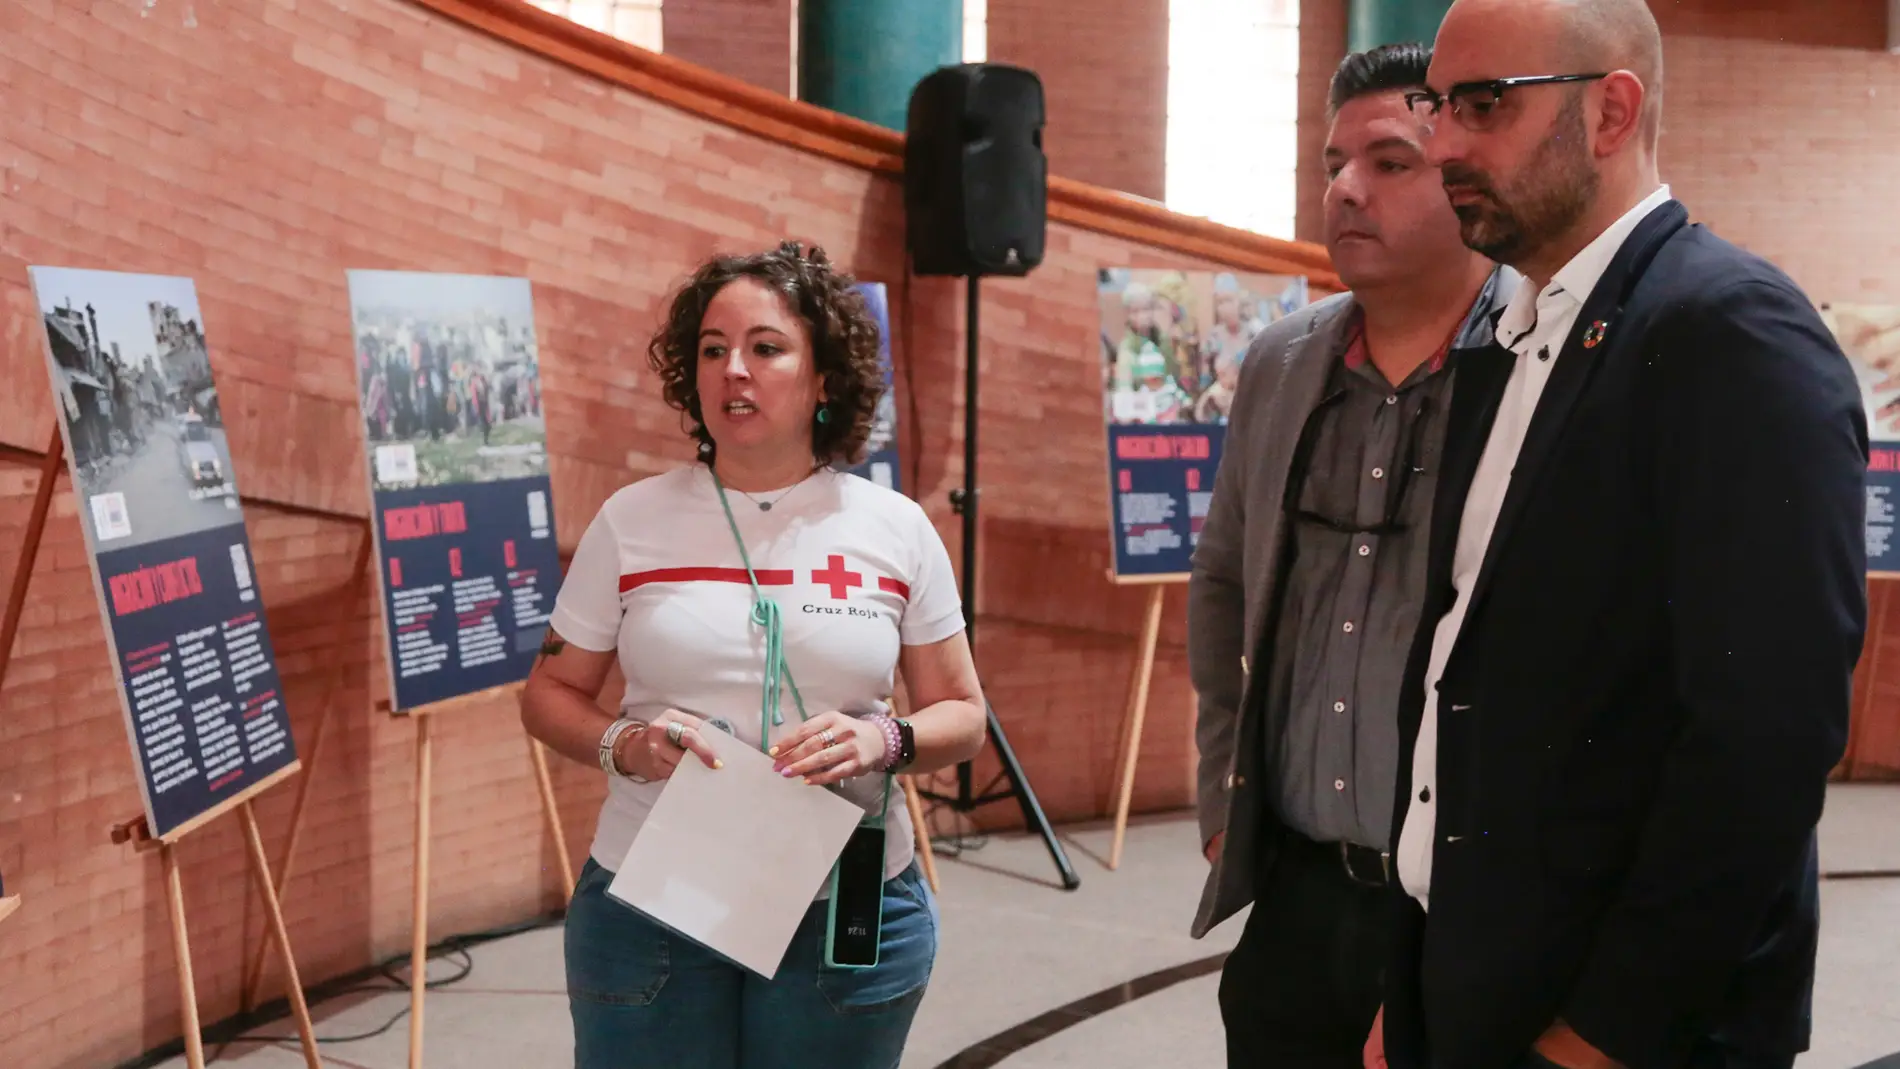 Voluntaria de Cruz Roja junto al presidente de la entidad en Extremadura, Jesús Palo, y el concejal de Cooperación, Ángel Calle, visitan las exposición